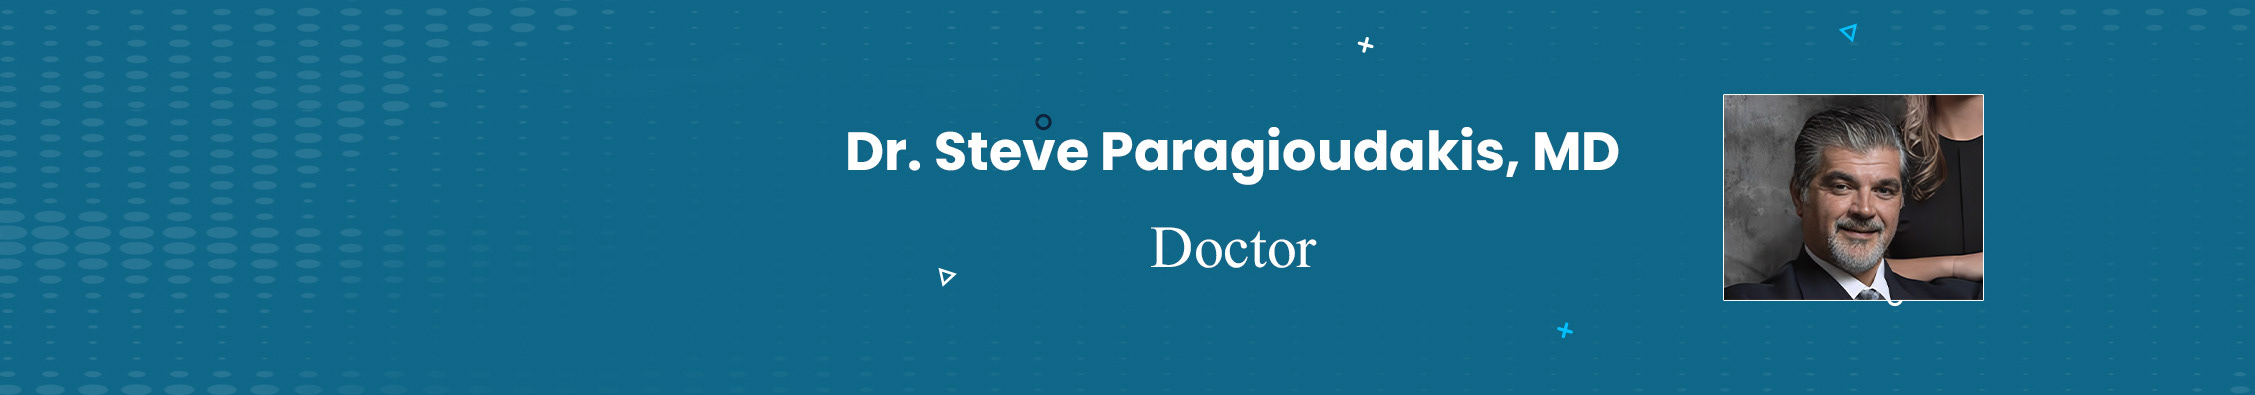 Dr. Steve Paragioudakis MD's profile banner